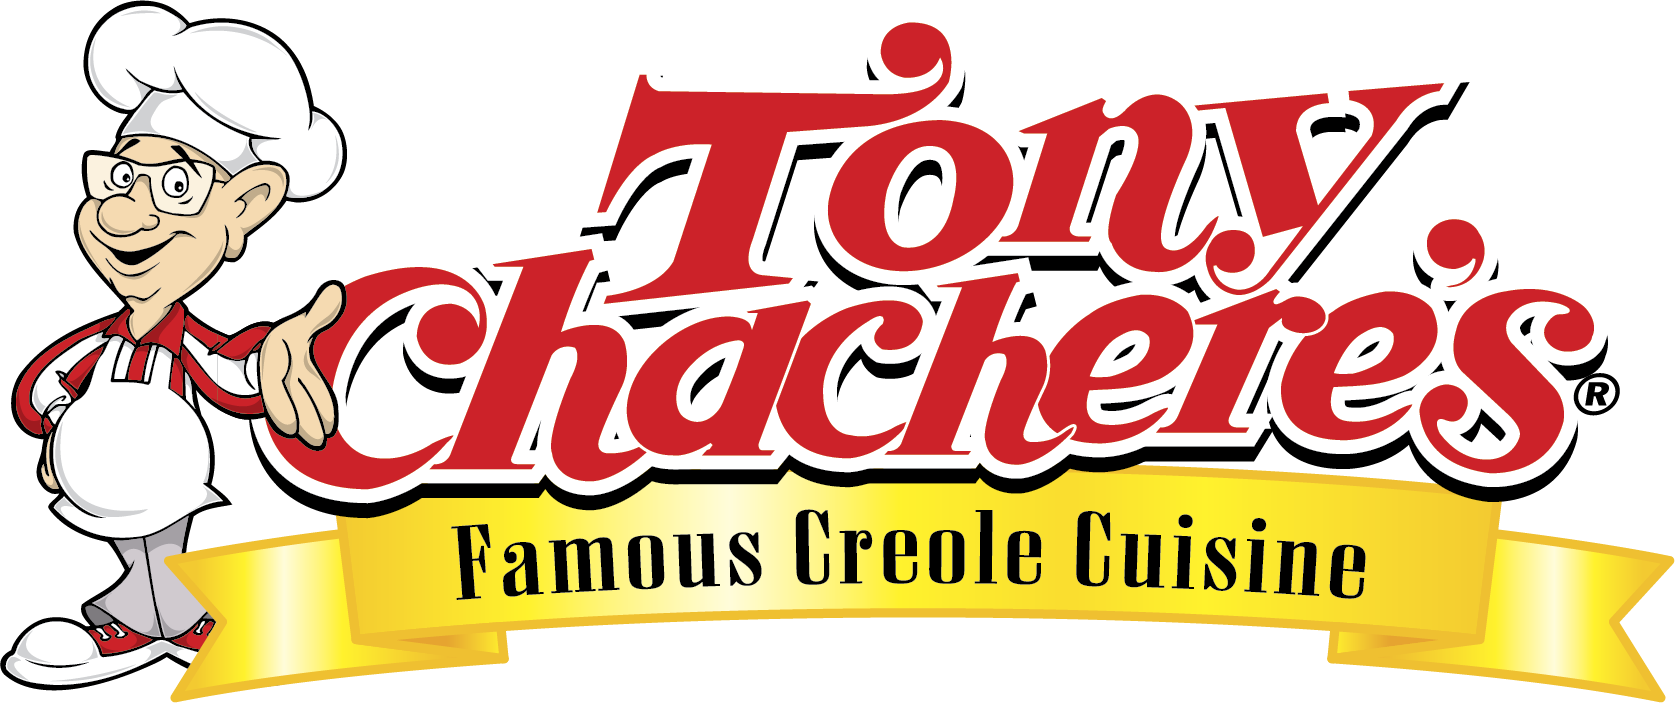 Tony Chachere’s Famous Creole Cuisine Slide Image